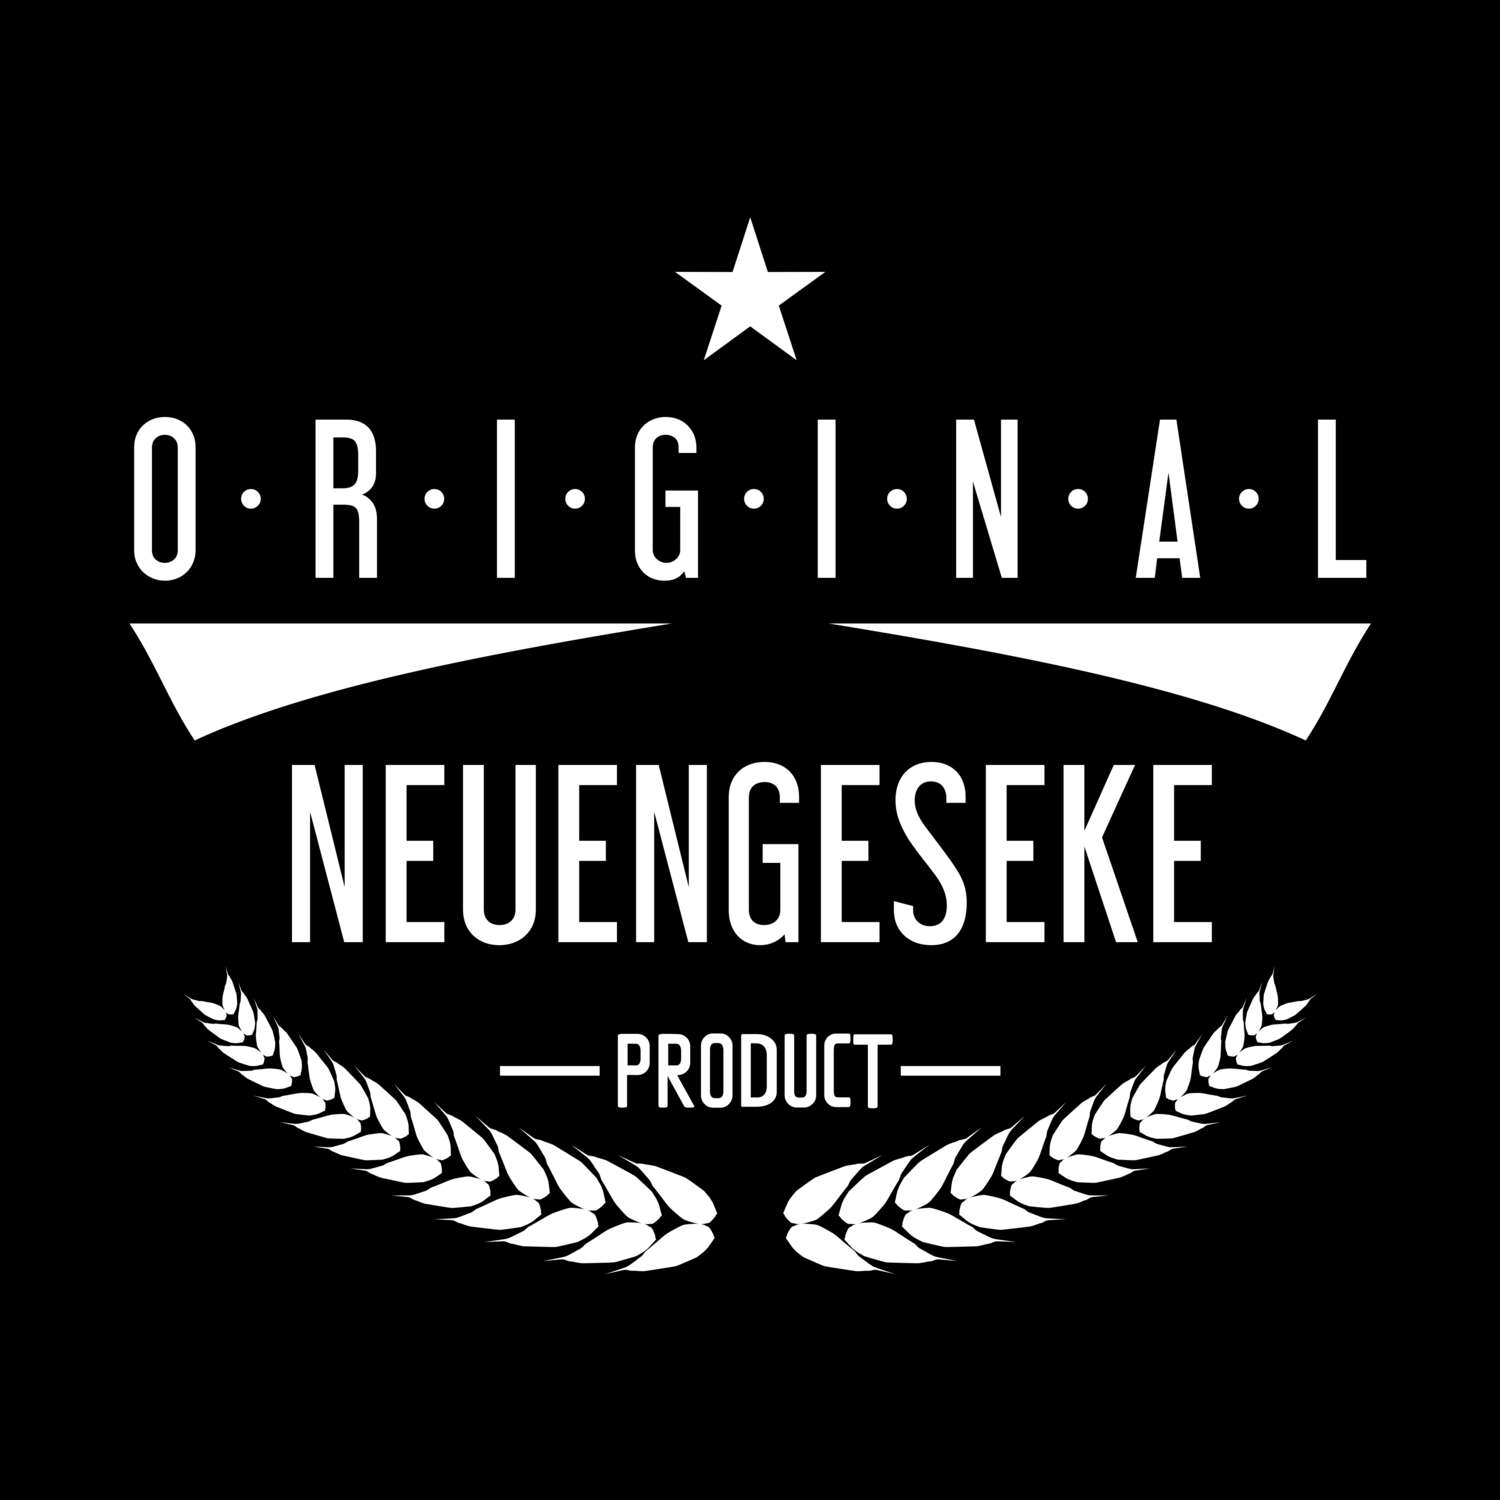 Neuengeseke T-Shirt »Original Product«